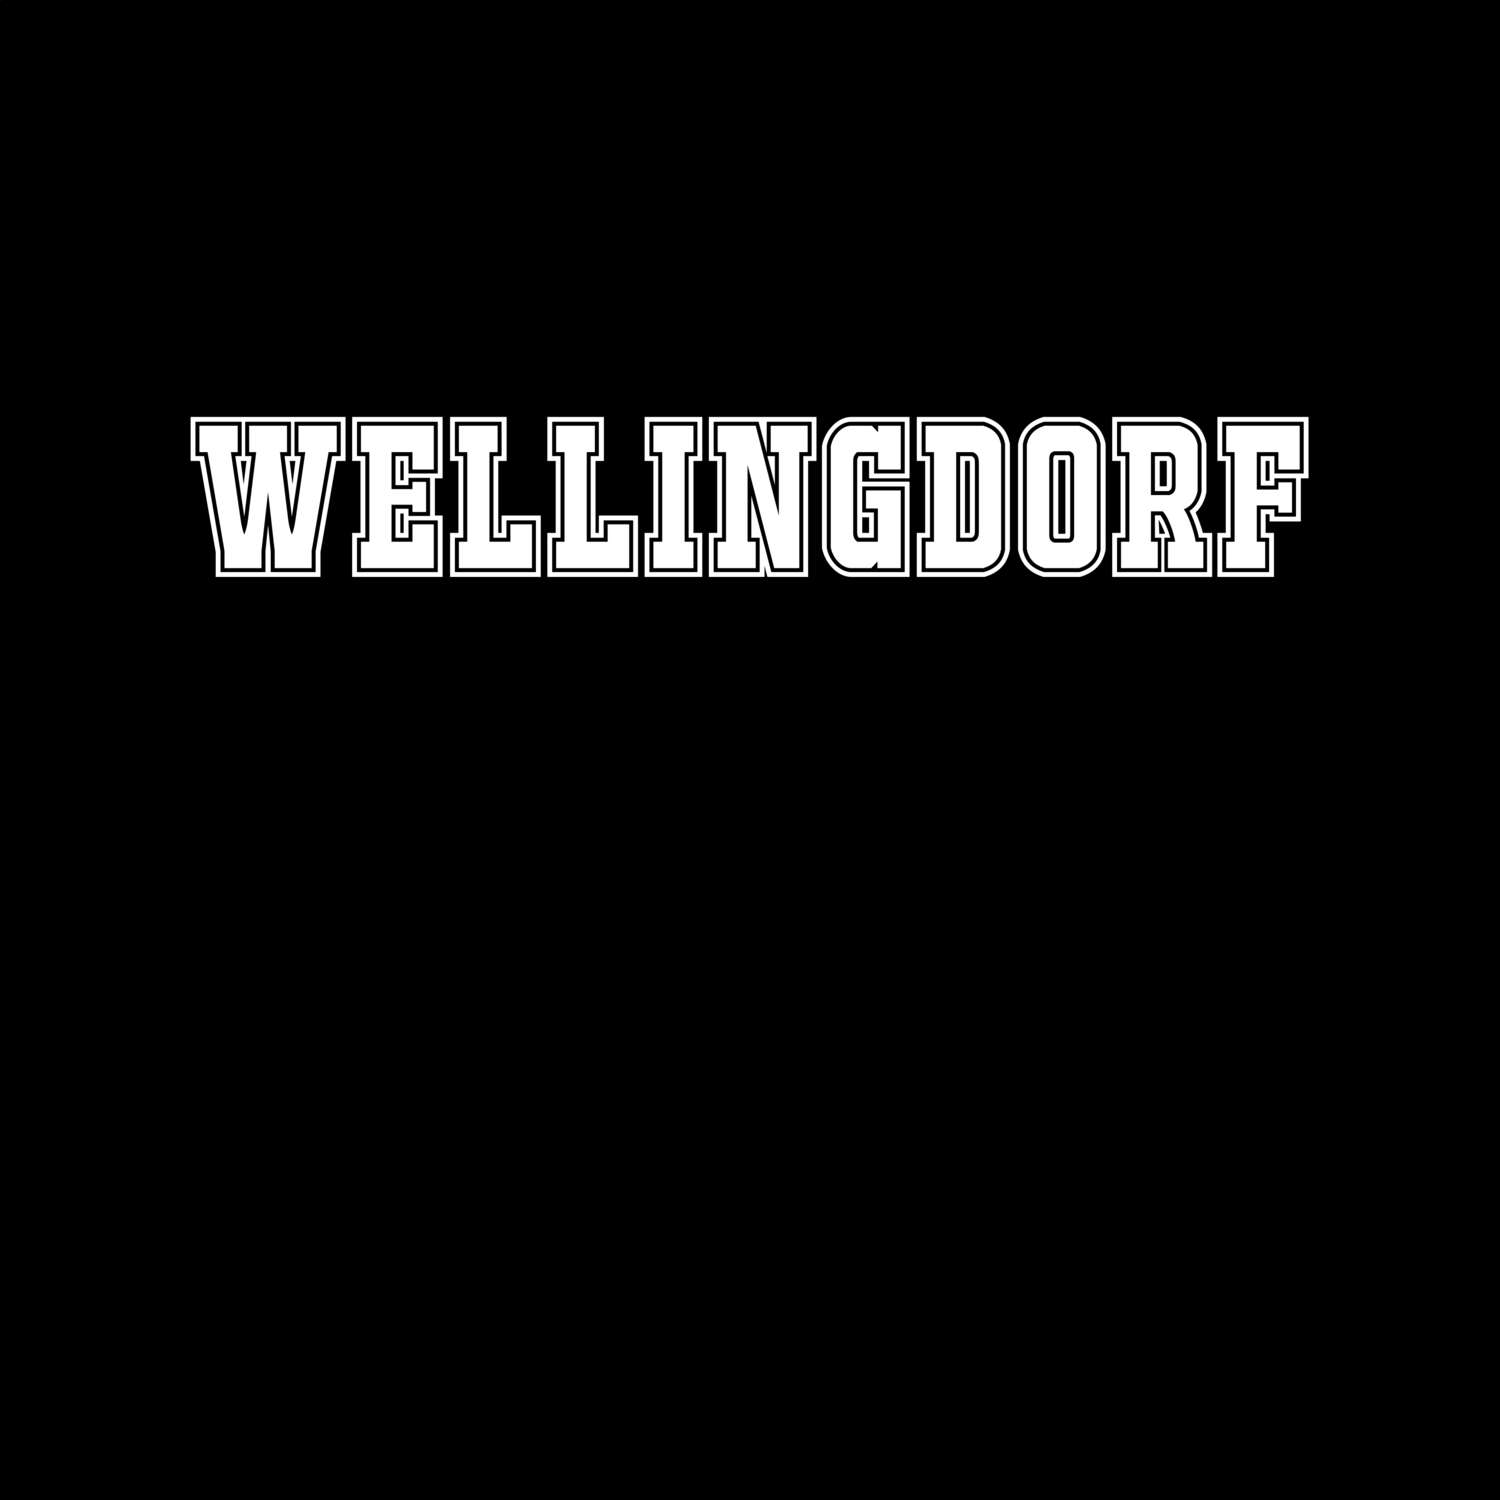 Wellingdorf T-Shirt »Classic«